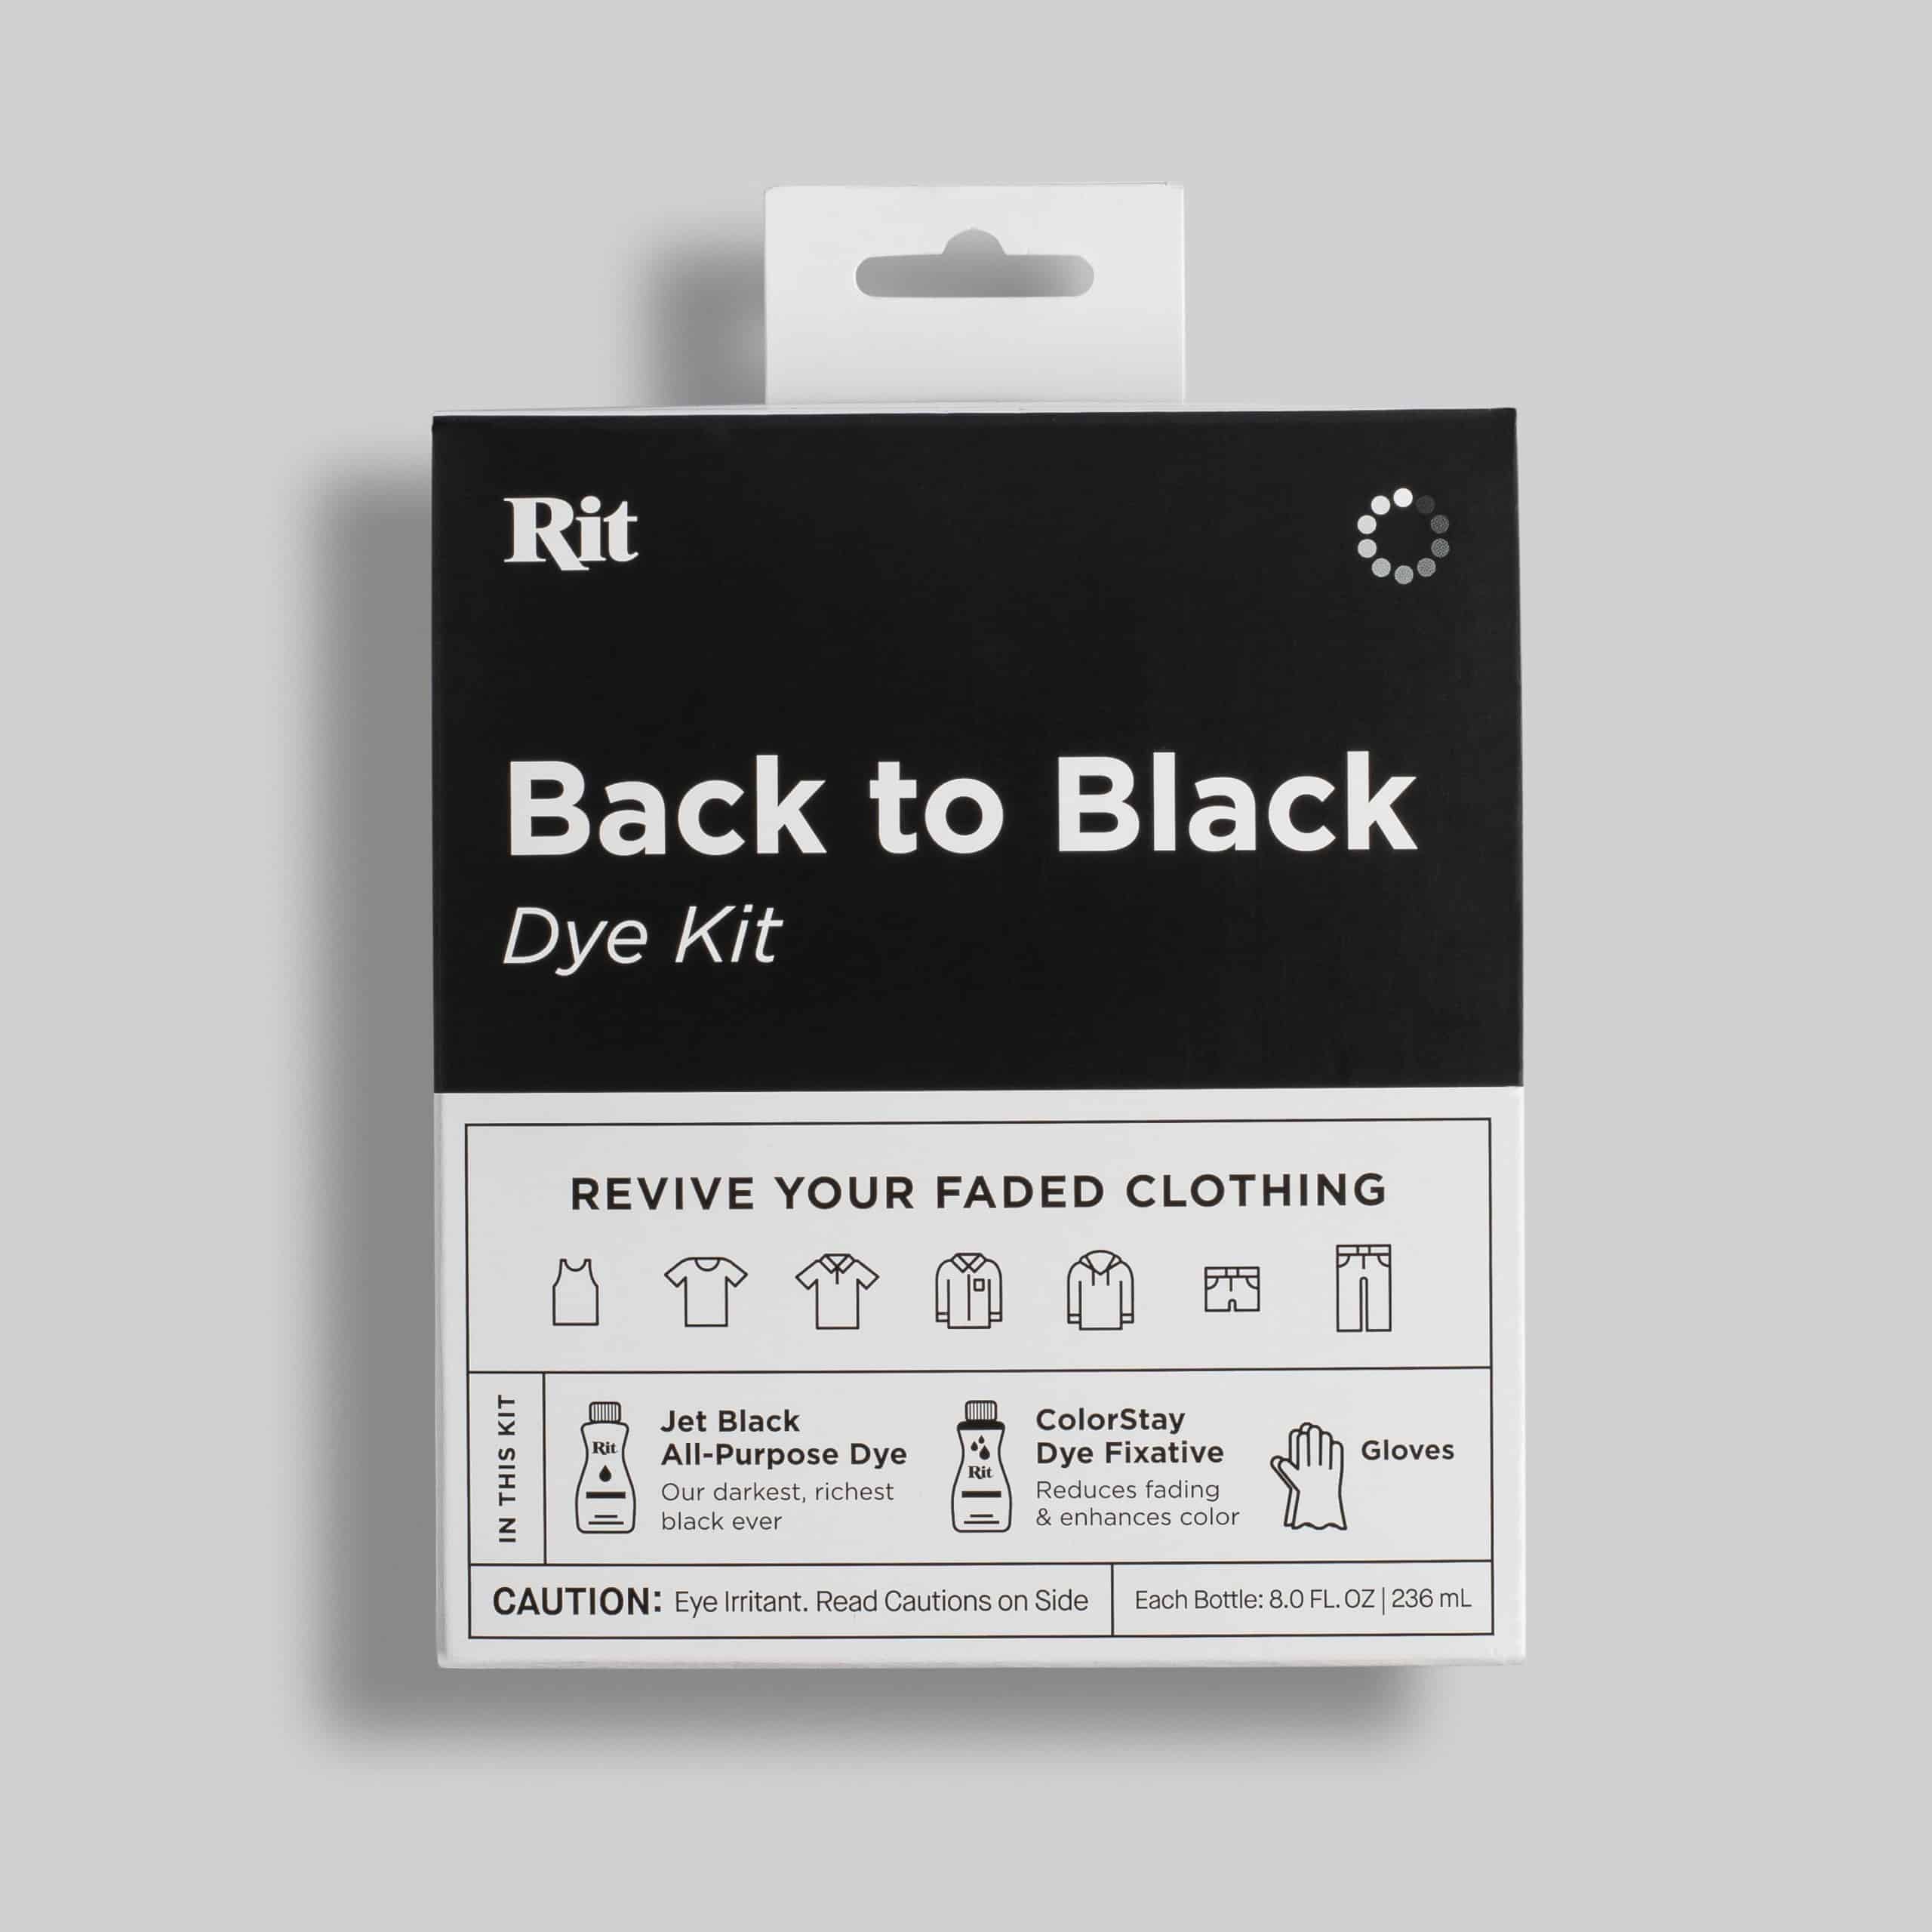 Color Clothing Black Cotton, Black Dye Cotton Fabrics